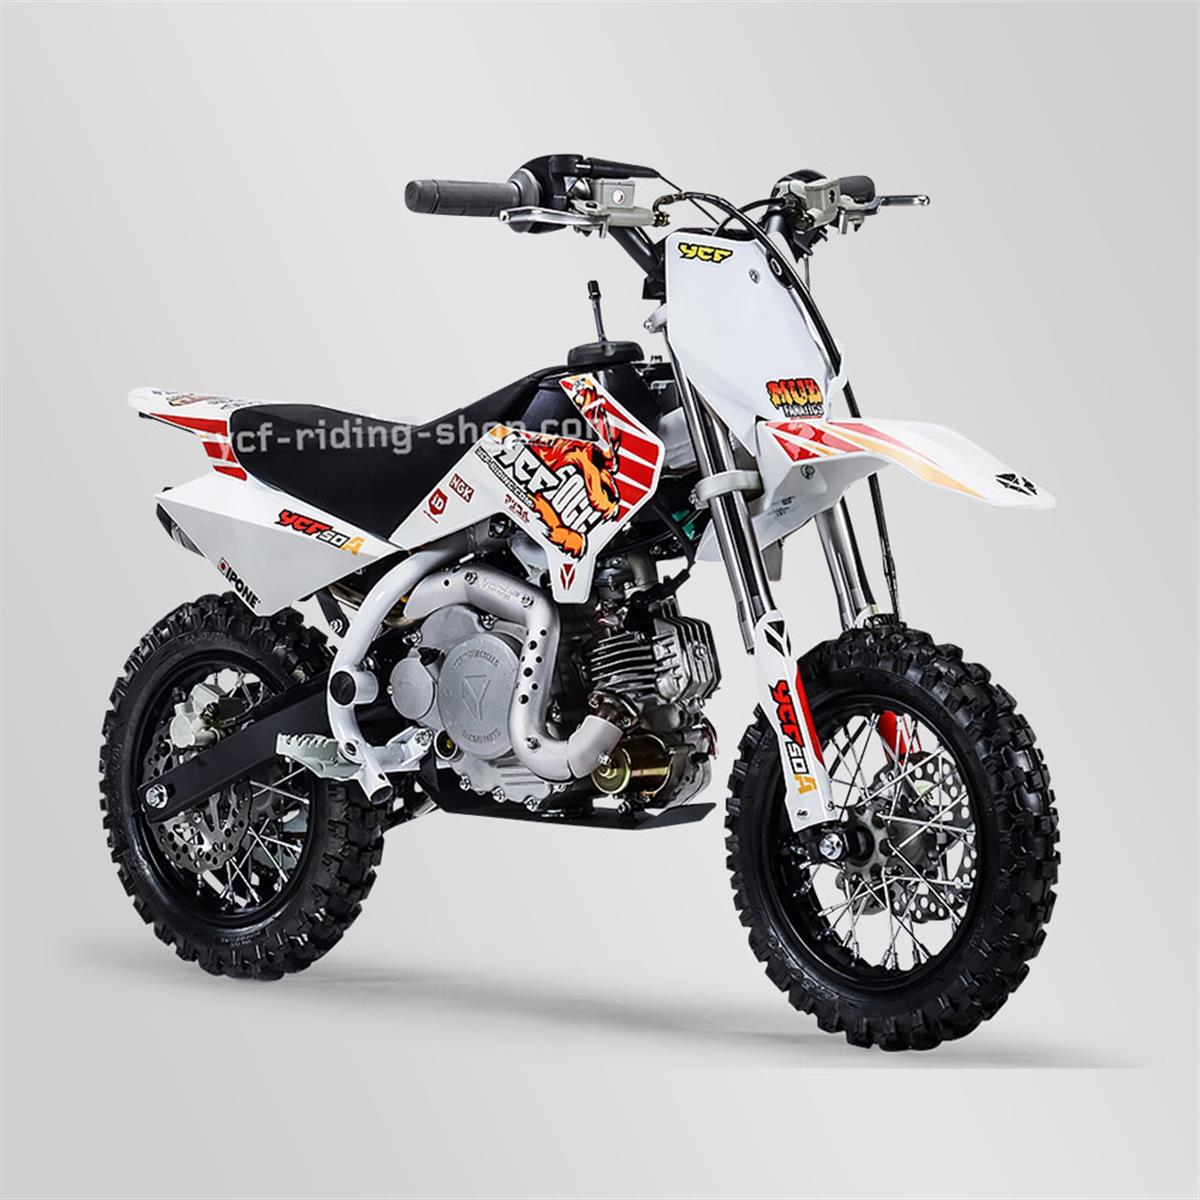 Moto pour enfant, Dirt bike / Pit bike YCF 50A - Small Mx | Smallmx - Dirt  bike, Pit bike, Quads, Minimoto